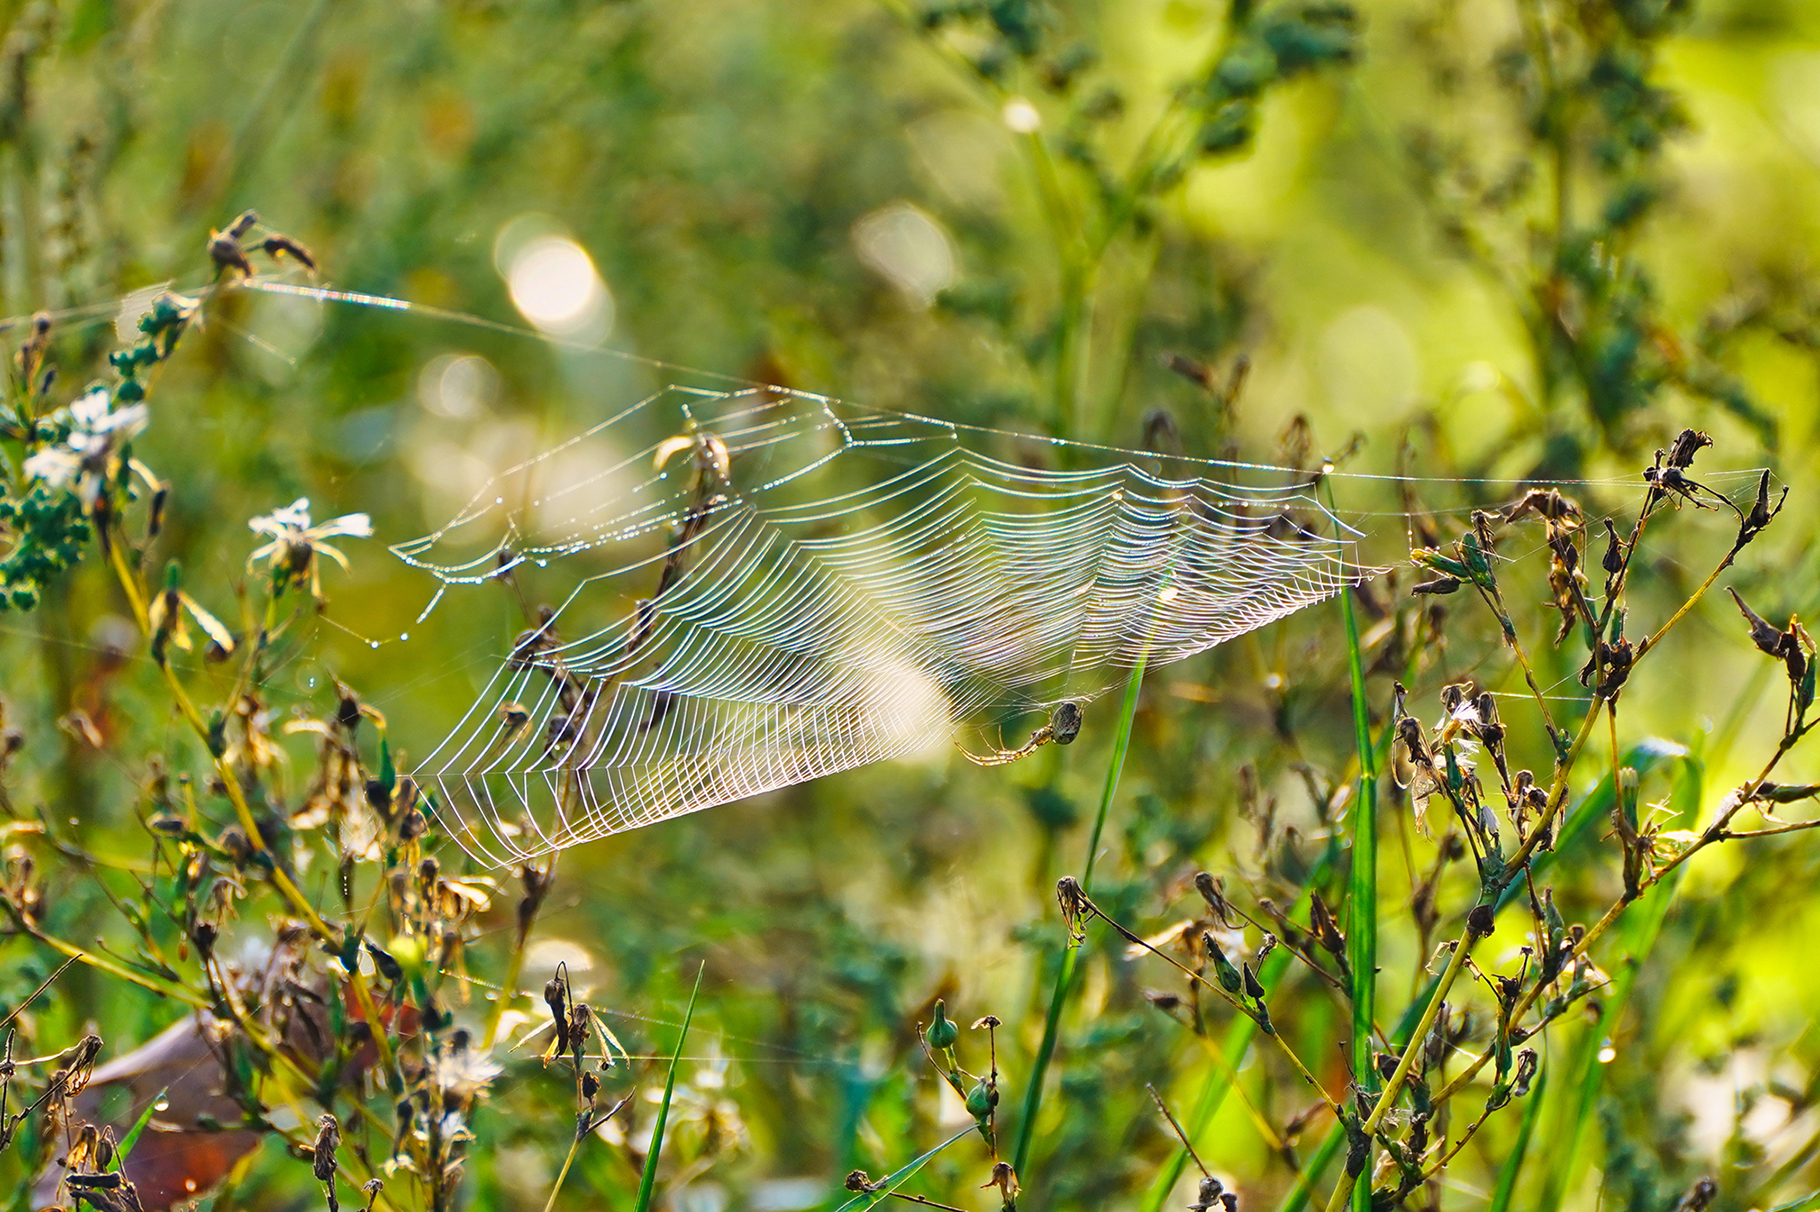 Herbstspinne am Netz (Metellina segmentata)